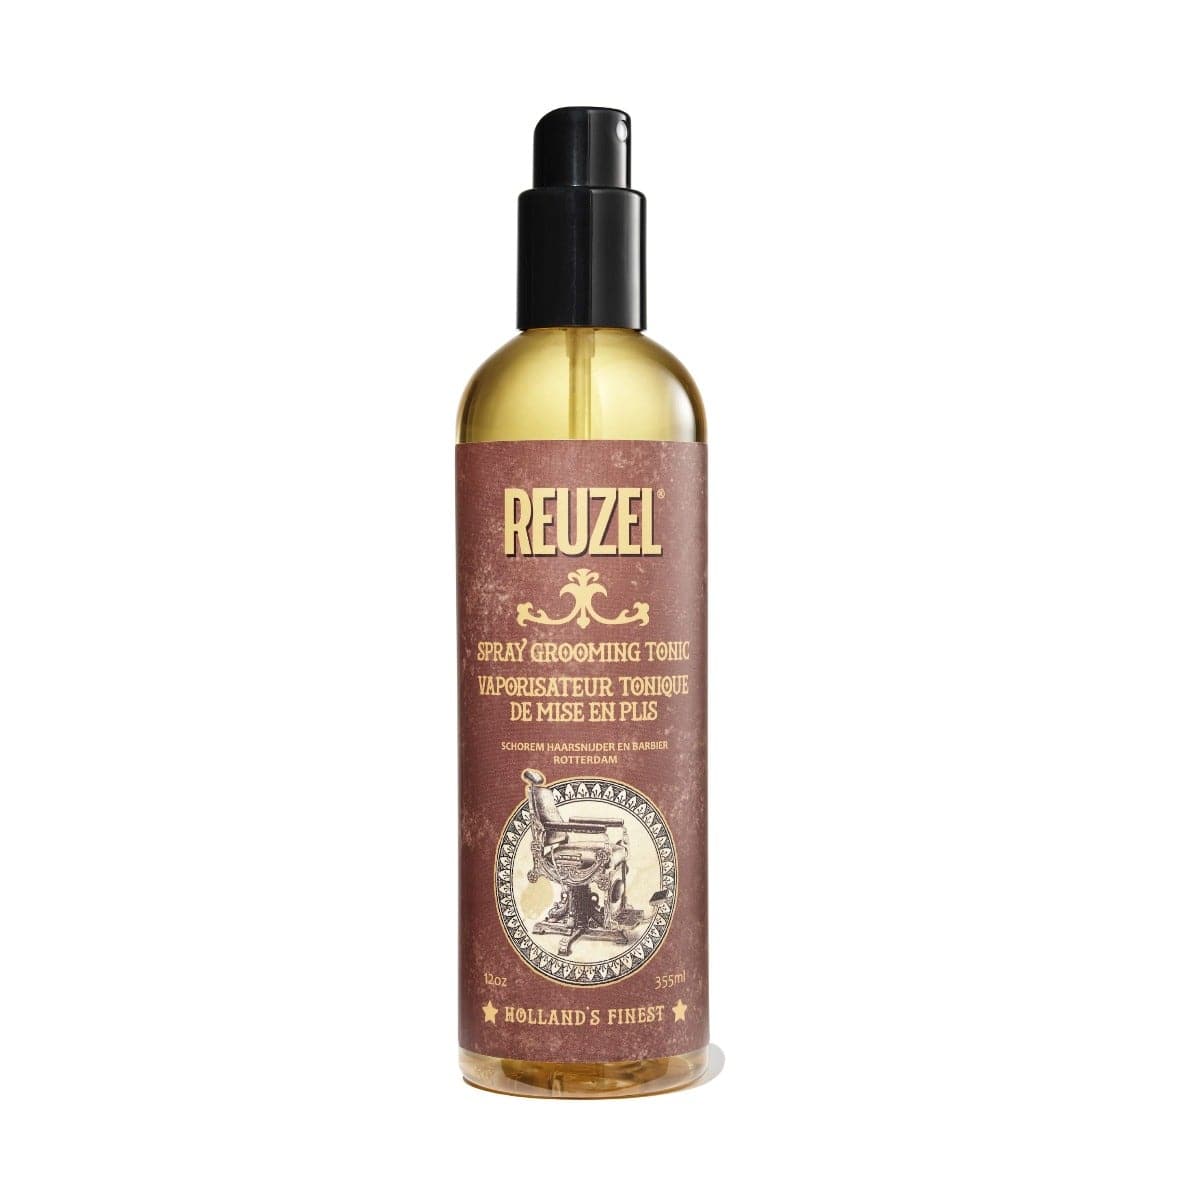 Reuzel - Spray Grooming Tonic 355ml